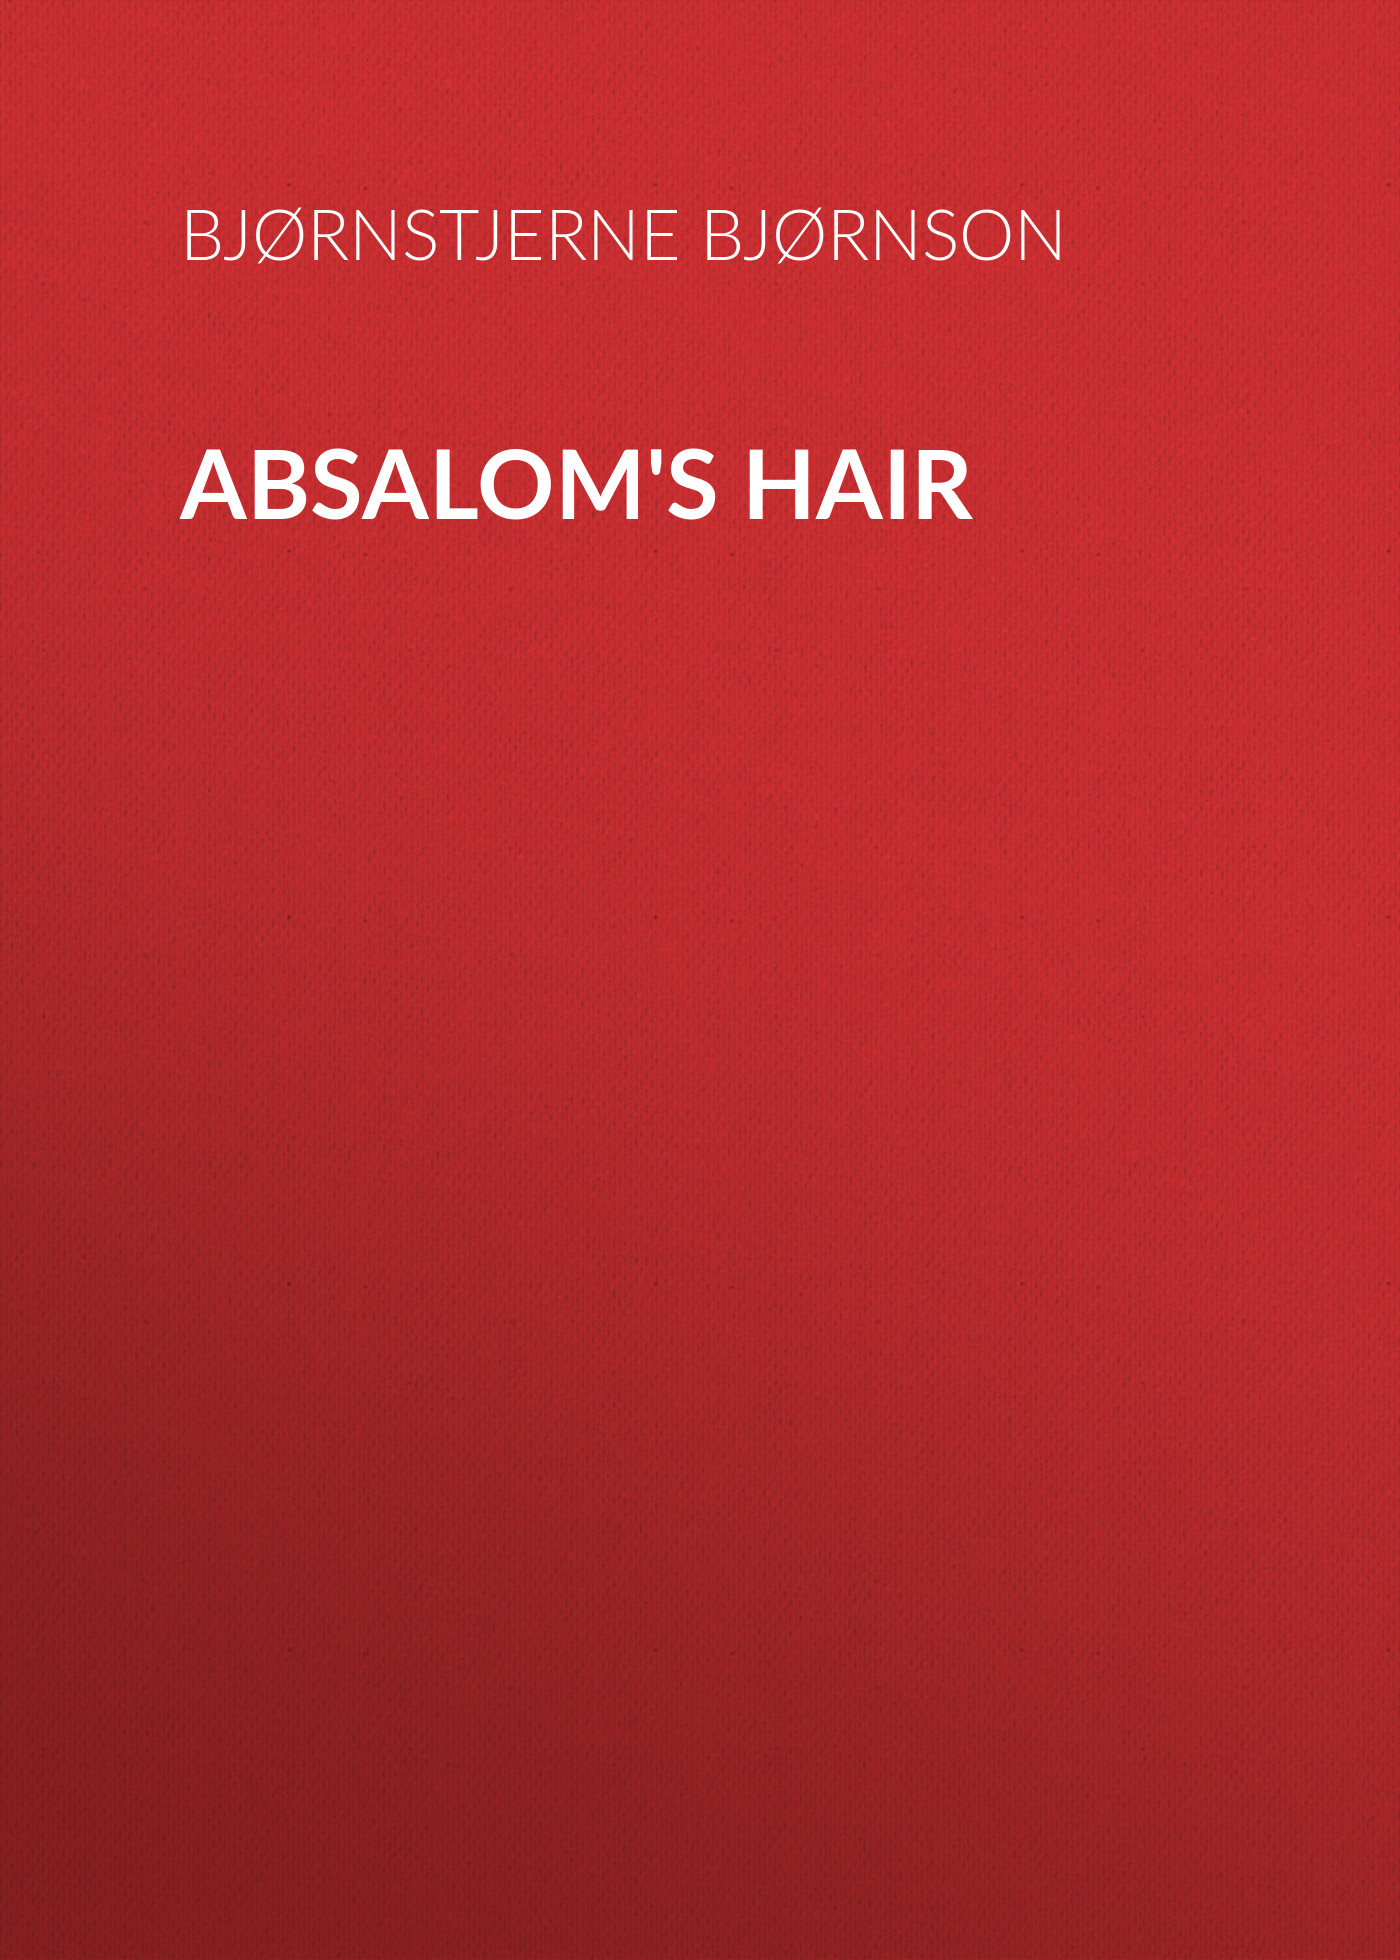 Книга Absalom's Hair из серии , созданная Bjørnstjerne Bjørnson, может относится к жанру Зарубежная классика, Зарубежная старинная литература. Стоимость электронной книги Absalom's Hair с идентификатором 36364782 составляет 0 руб.